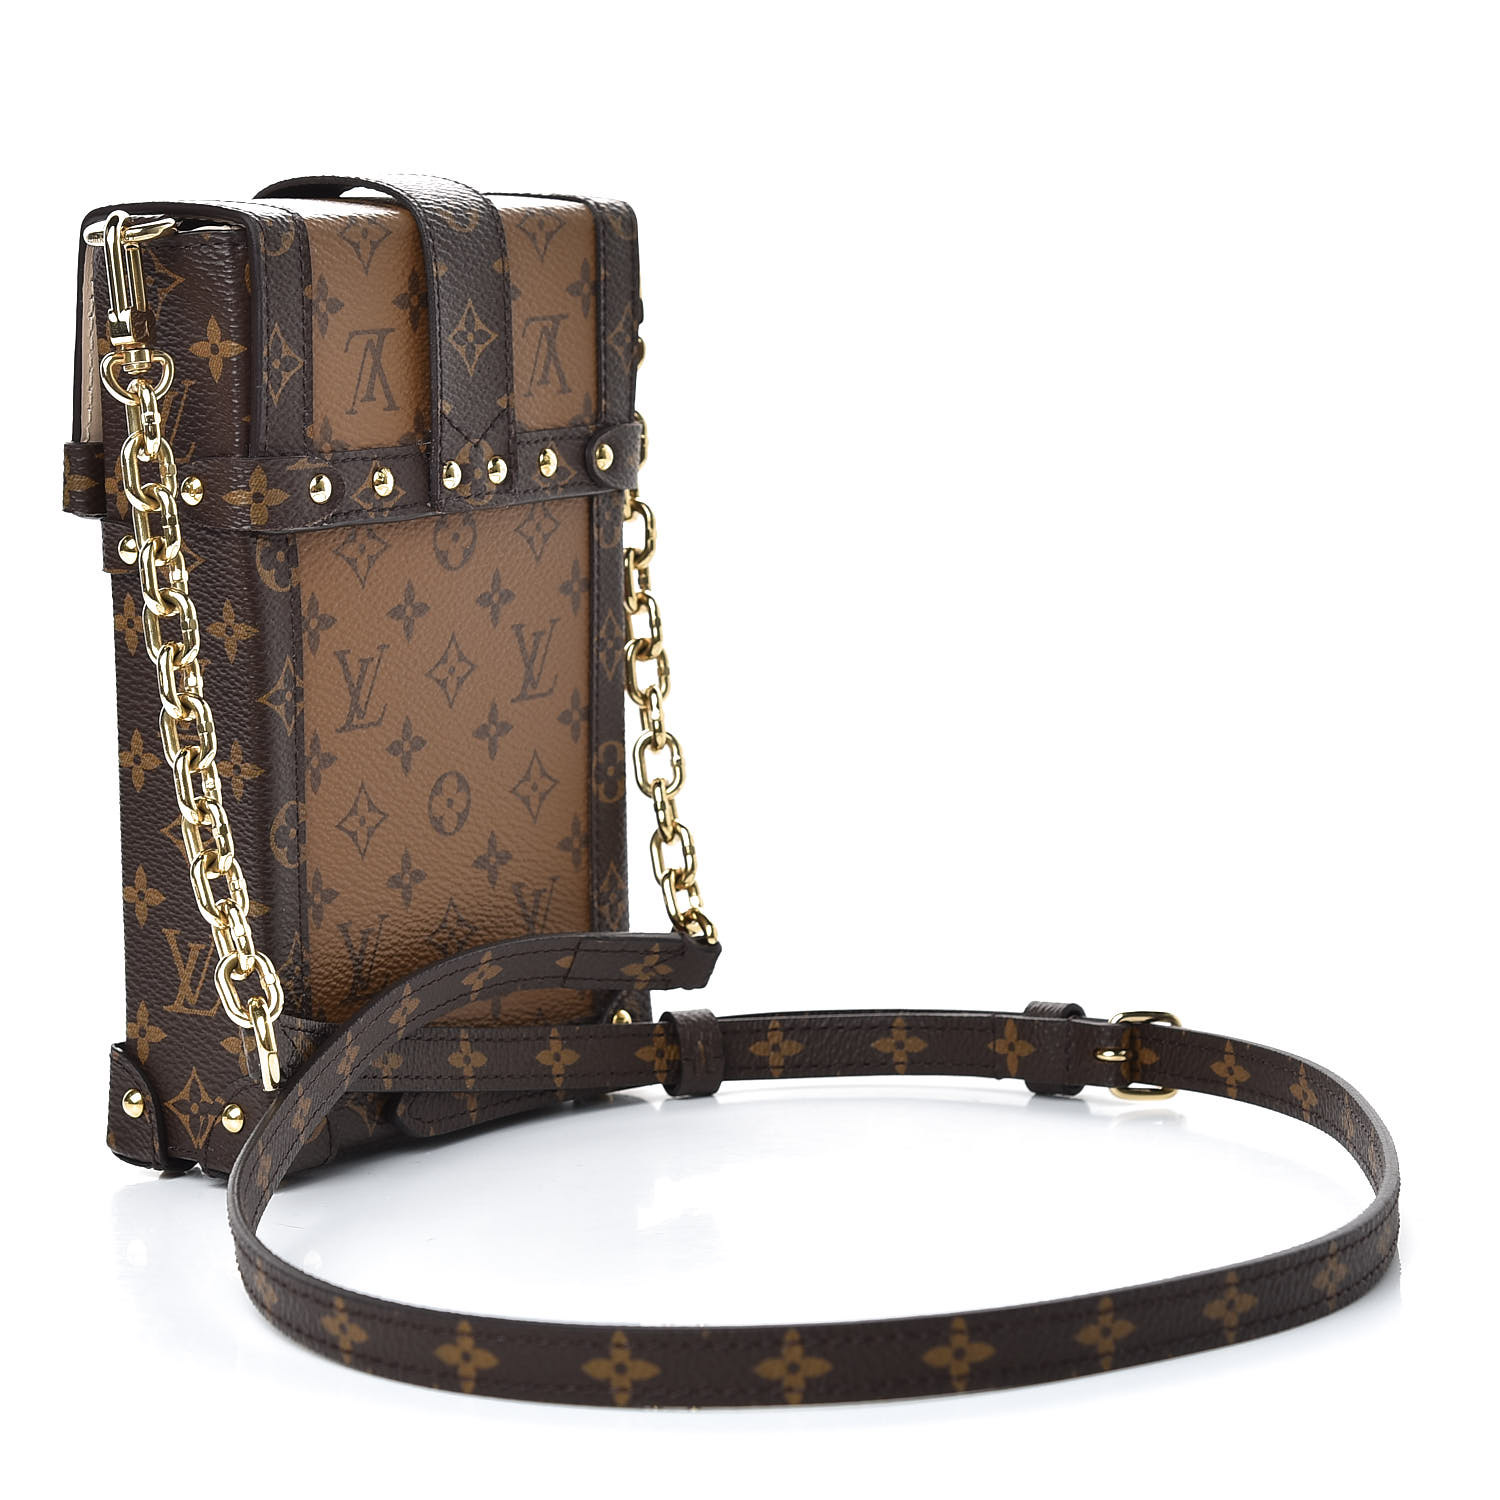 Bag review] Louis Vuitton pochette trunk verticale & Louis Vuitton